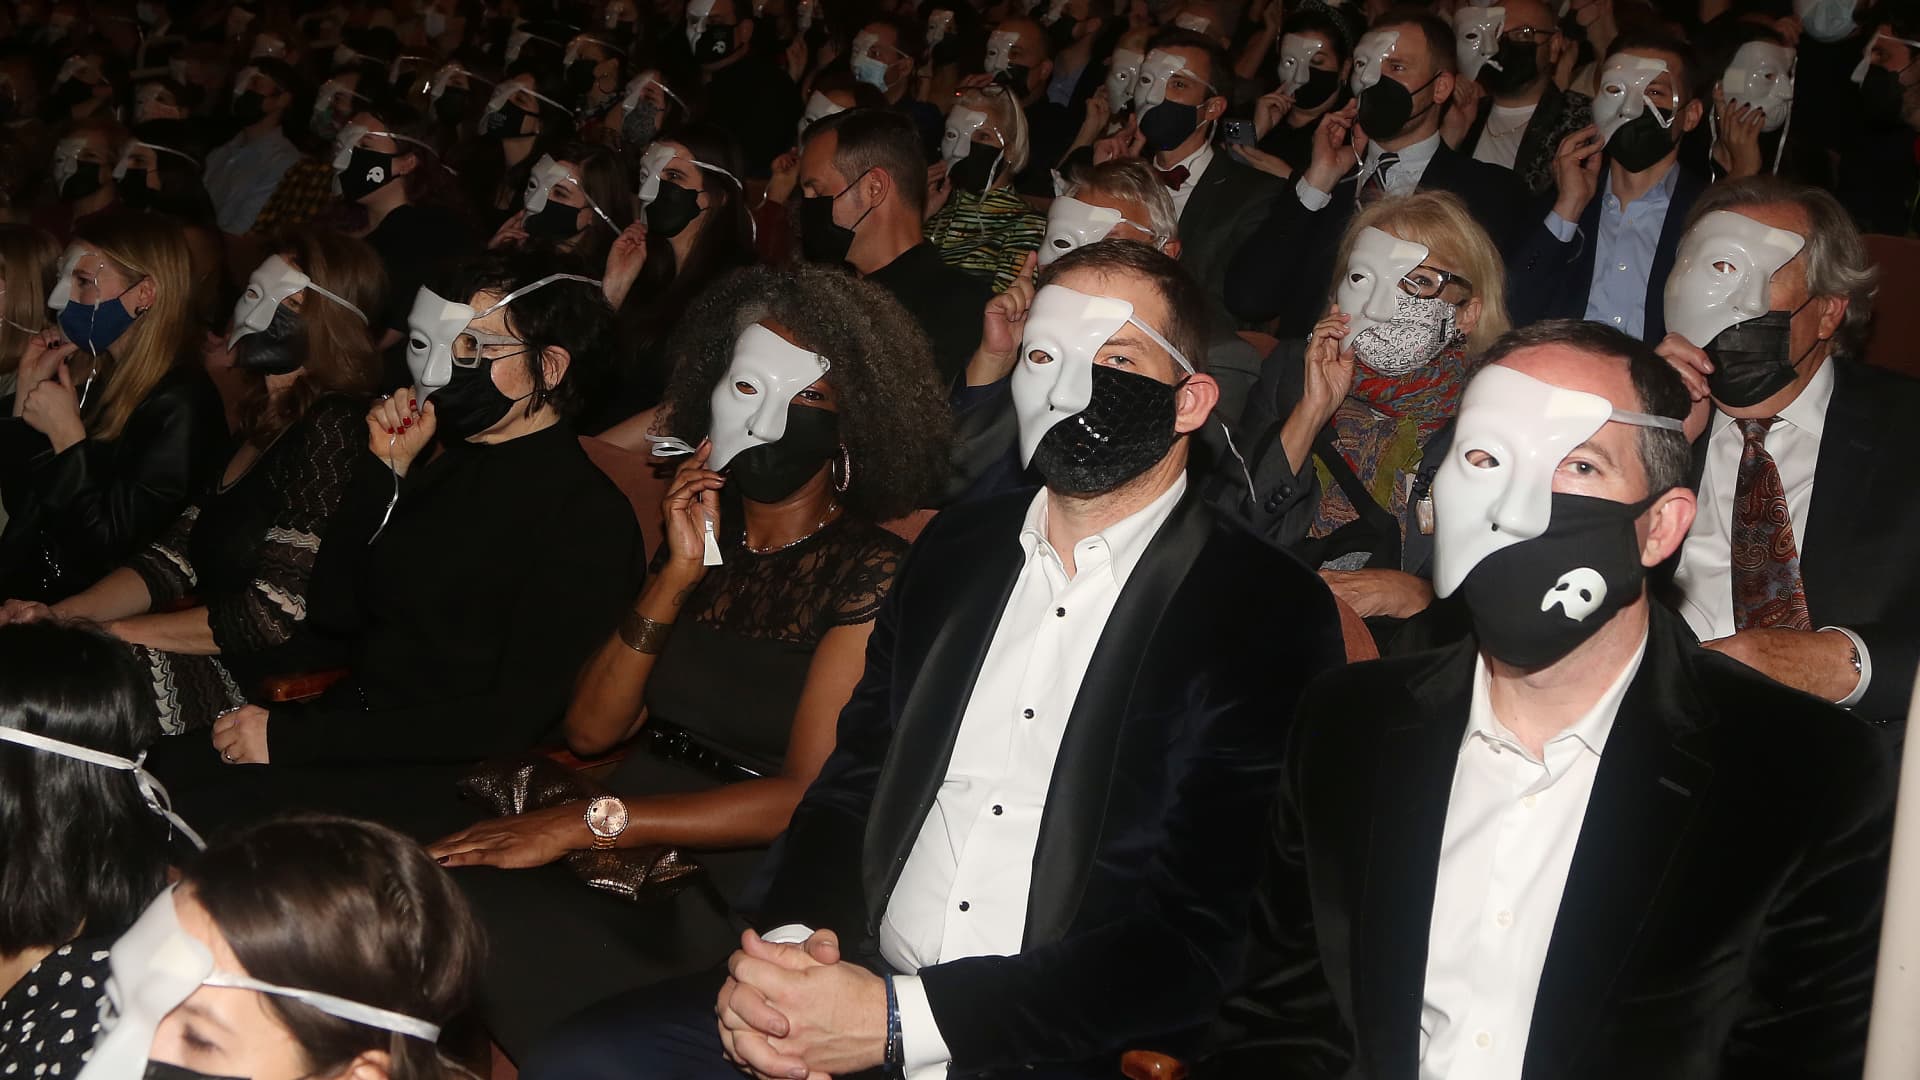 Broadway will lift its audience mask mandate starting July 1